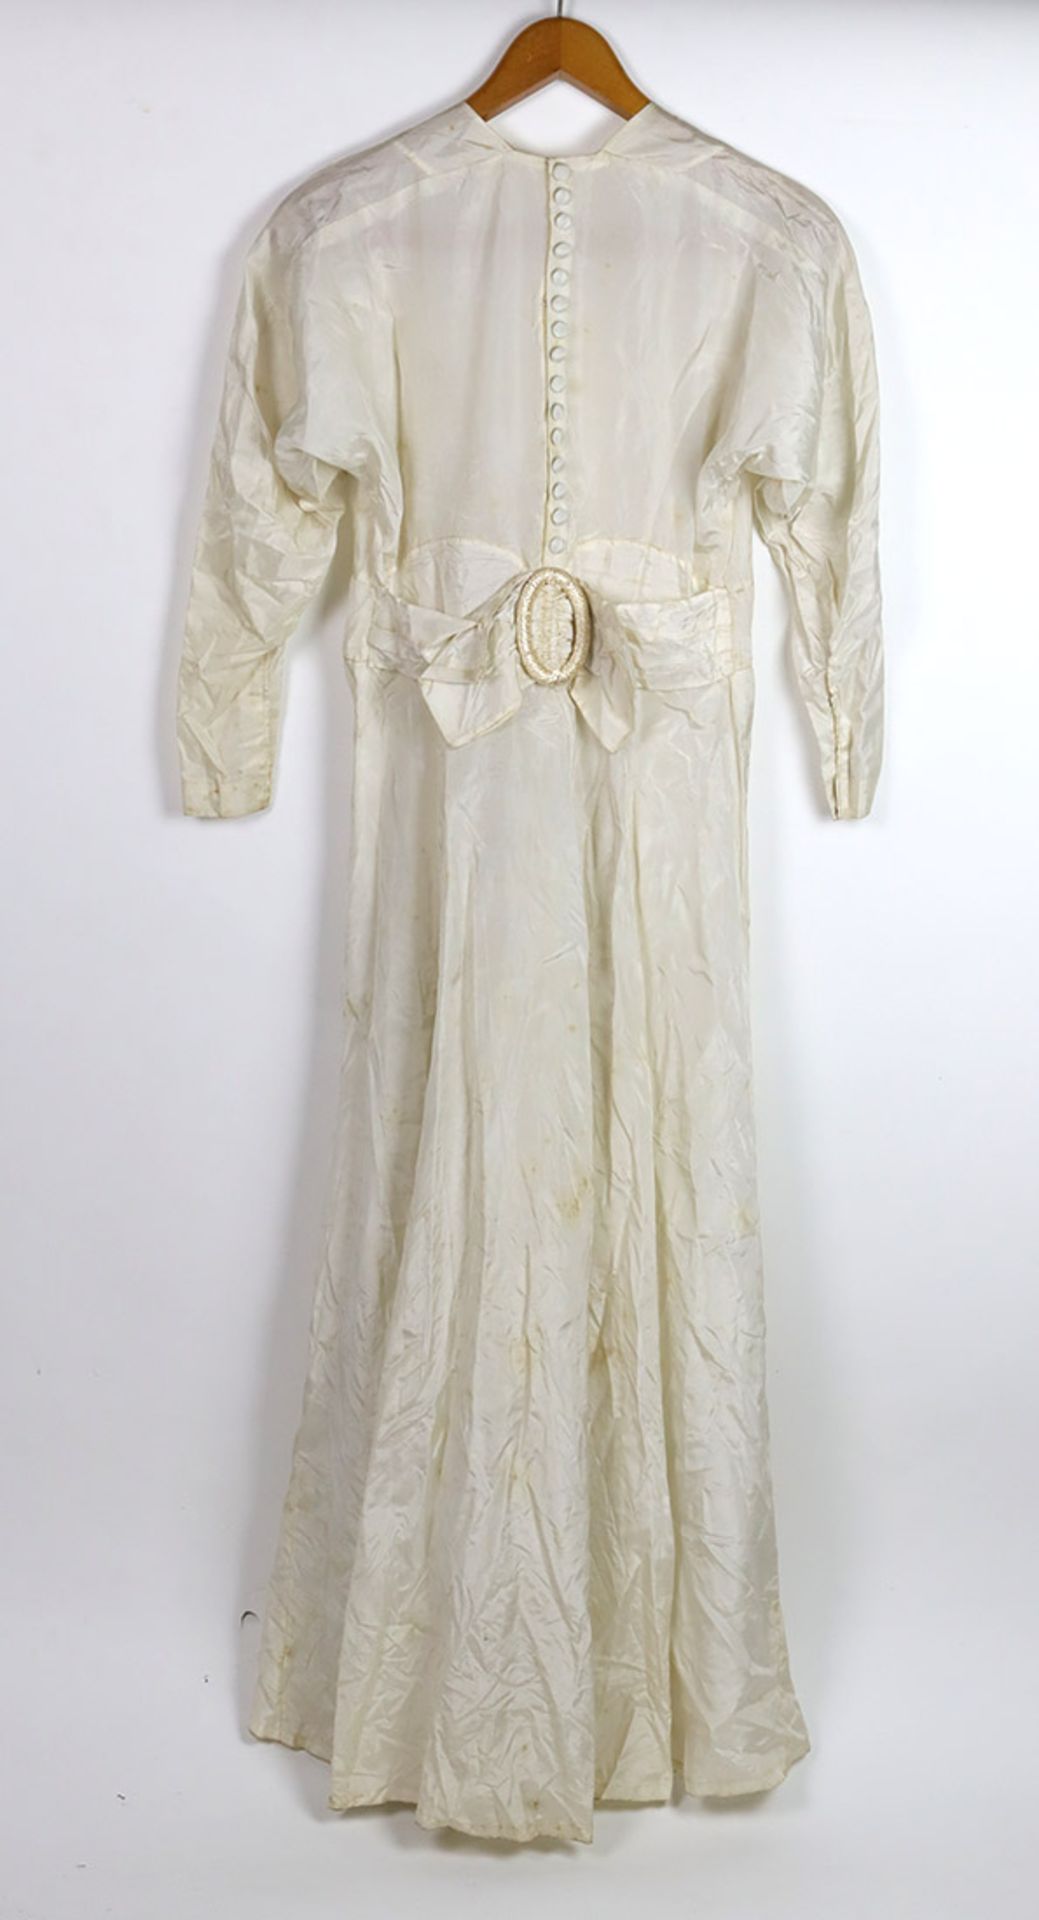 Hochzeitskleid mit Spitze um 1930cremeweiße Kunstseide, schlanke schlichte Form, langes Kleid mit - Bild 3 aus 3